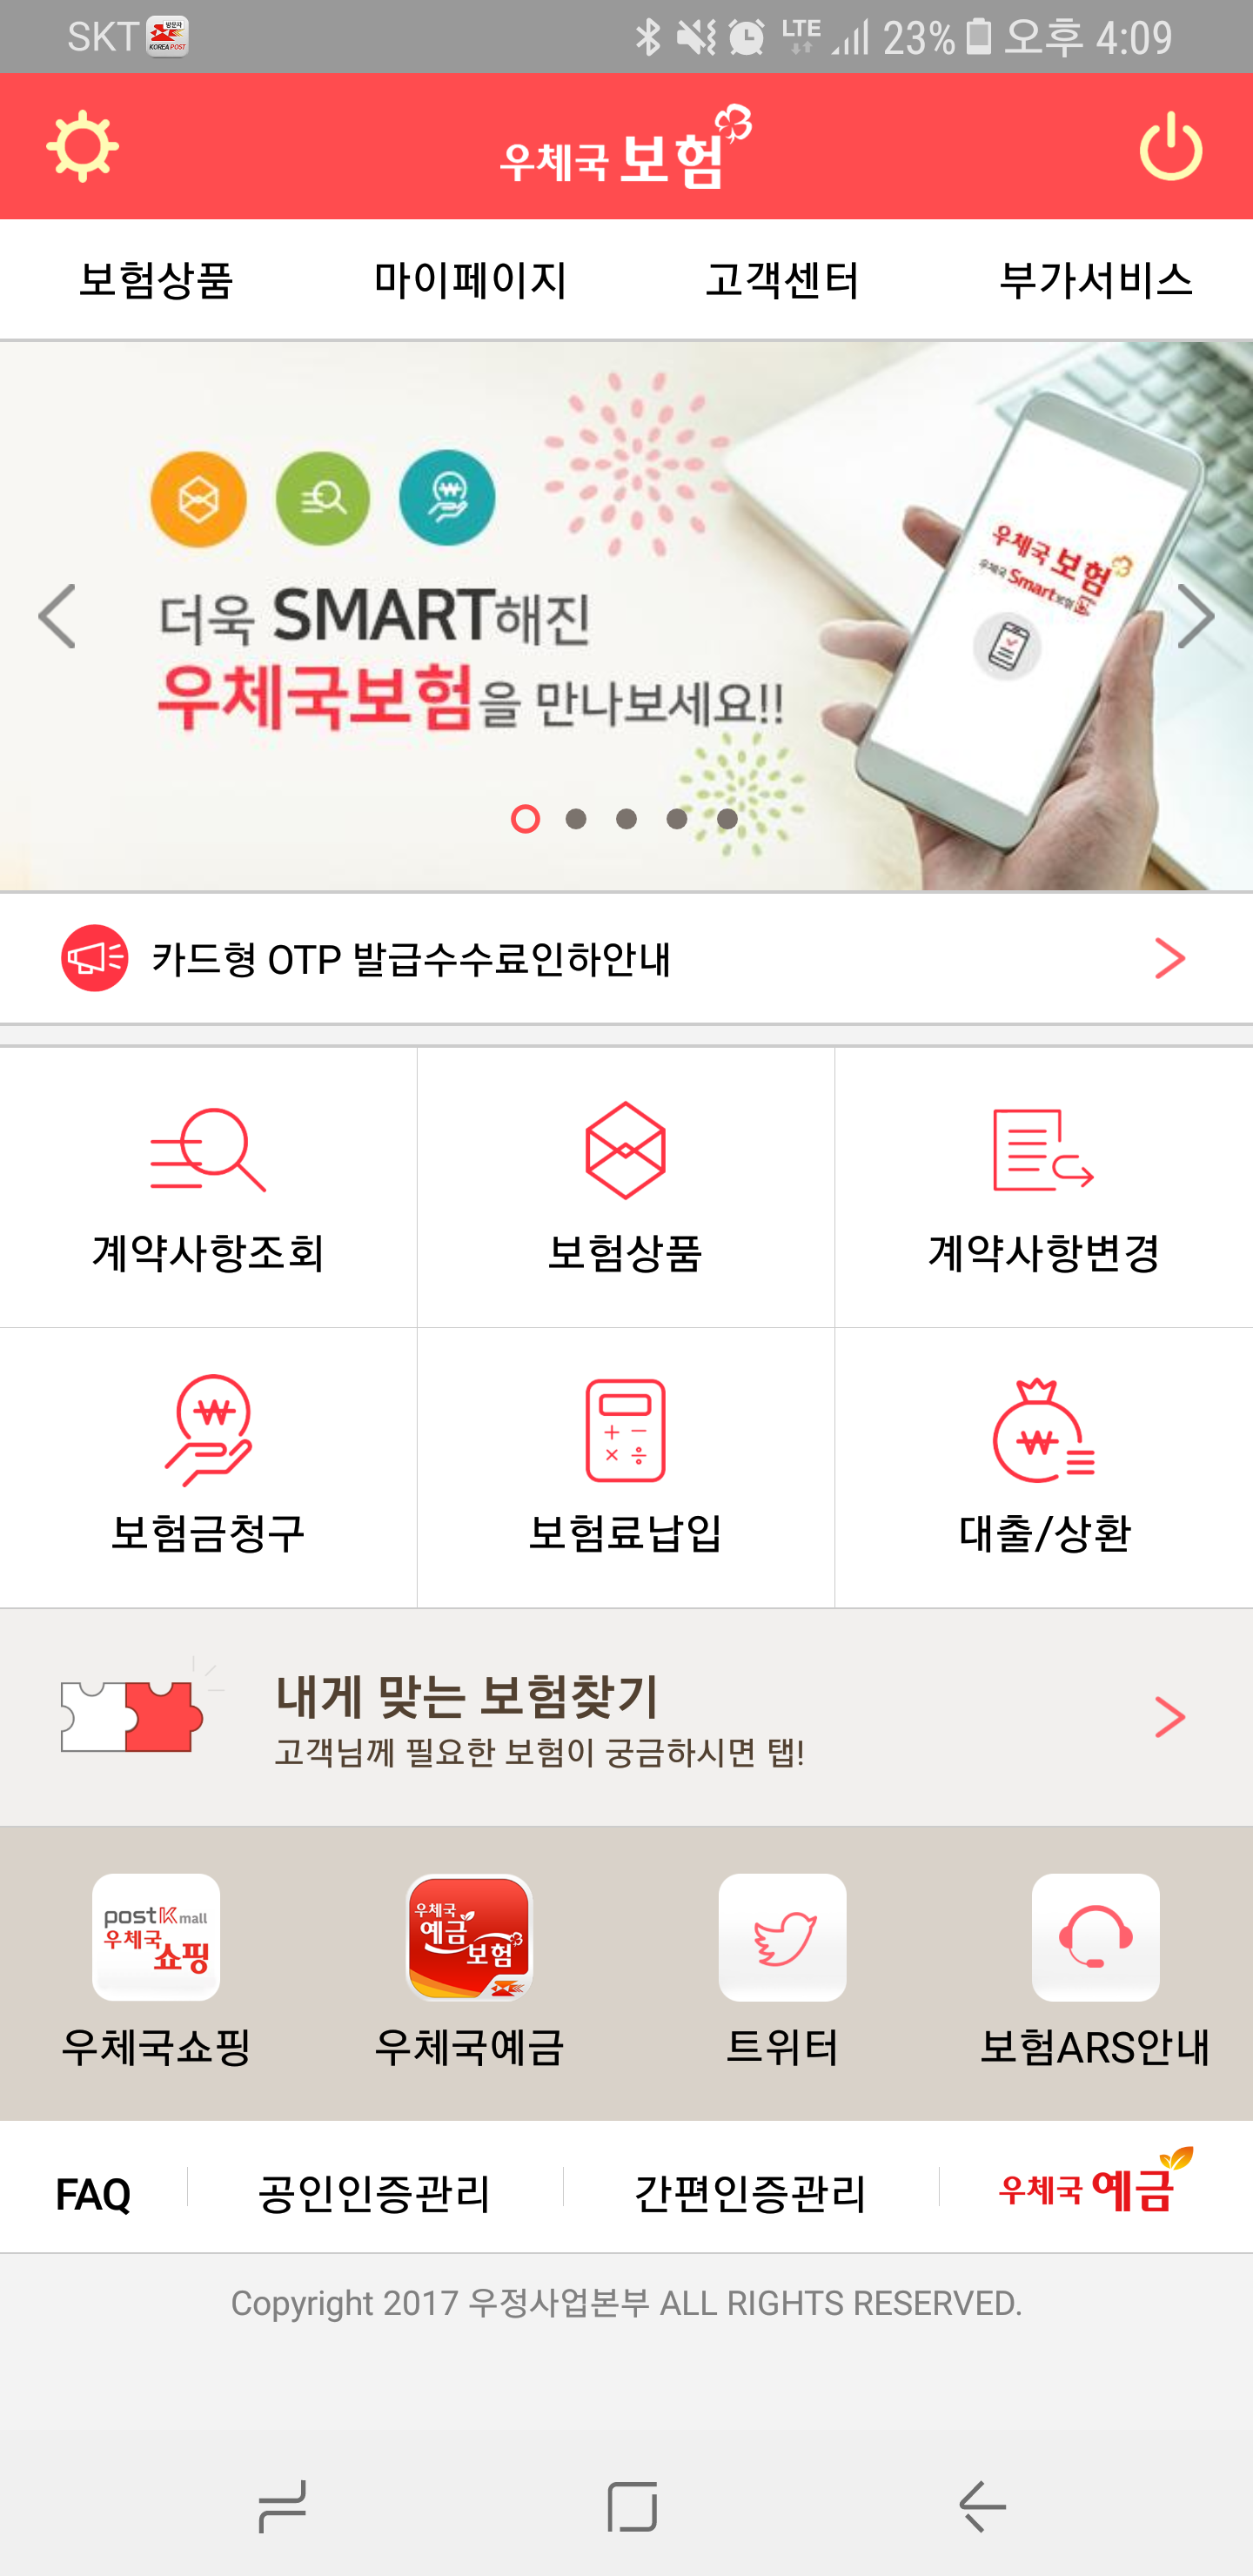 우체국보험 앱(Android) ver 1.0.3 스크릿샷